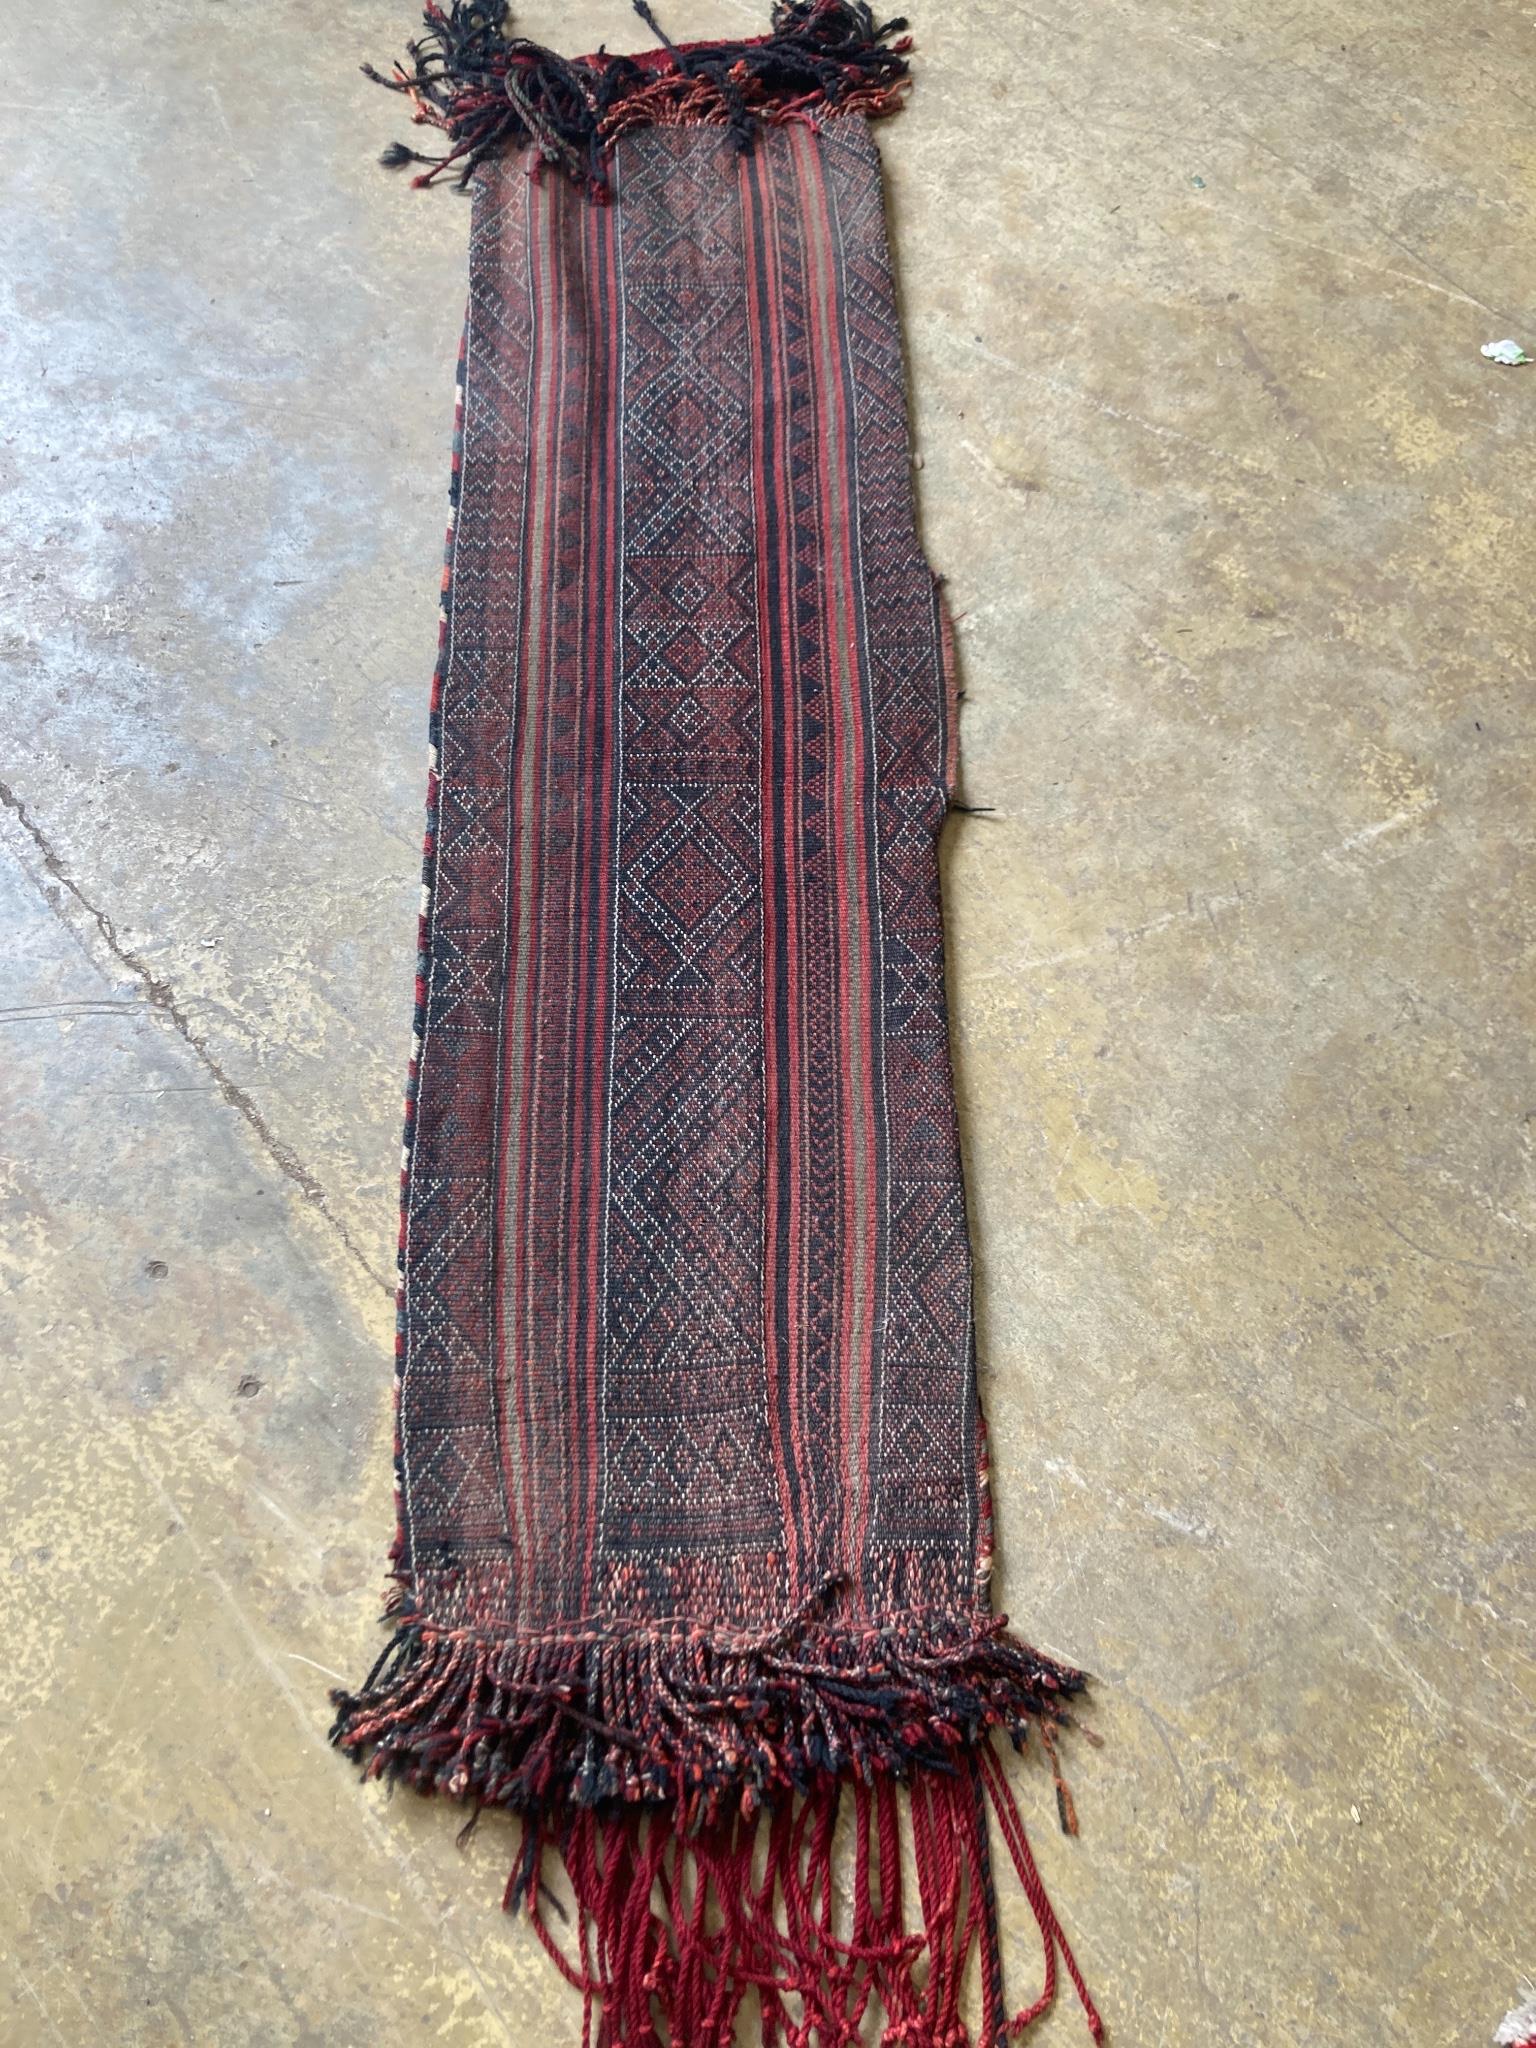 An Afghan saddle rug